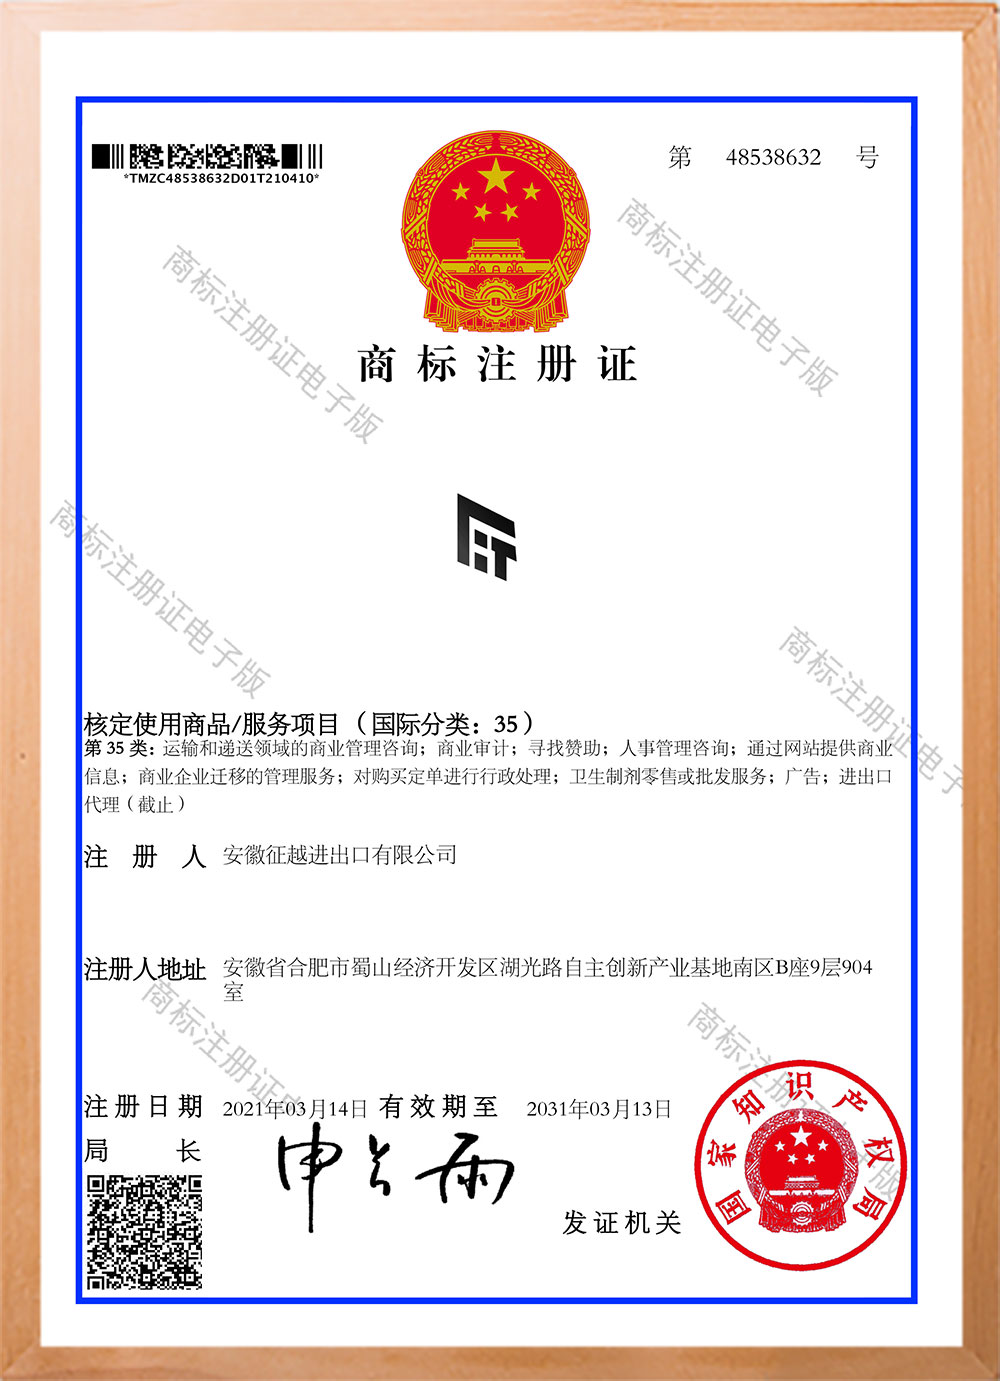 certificado 5